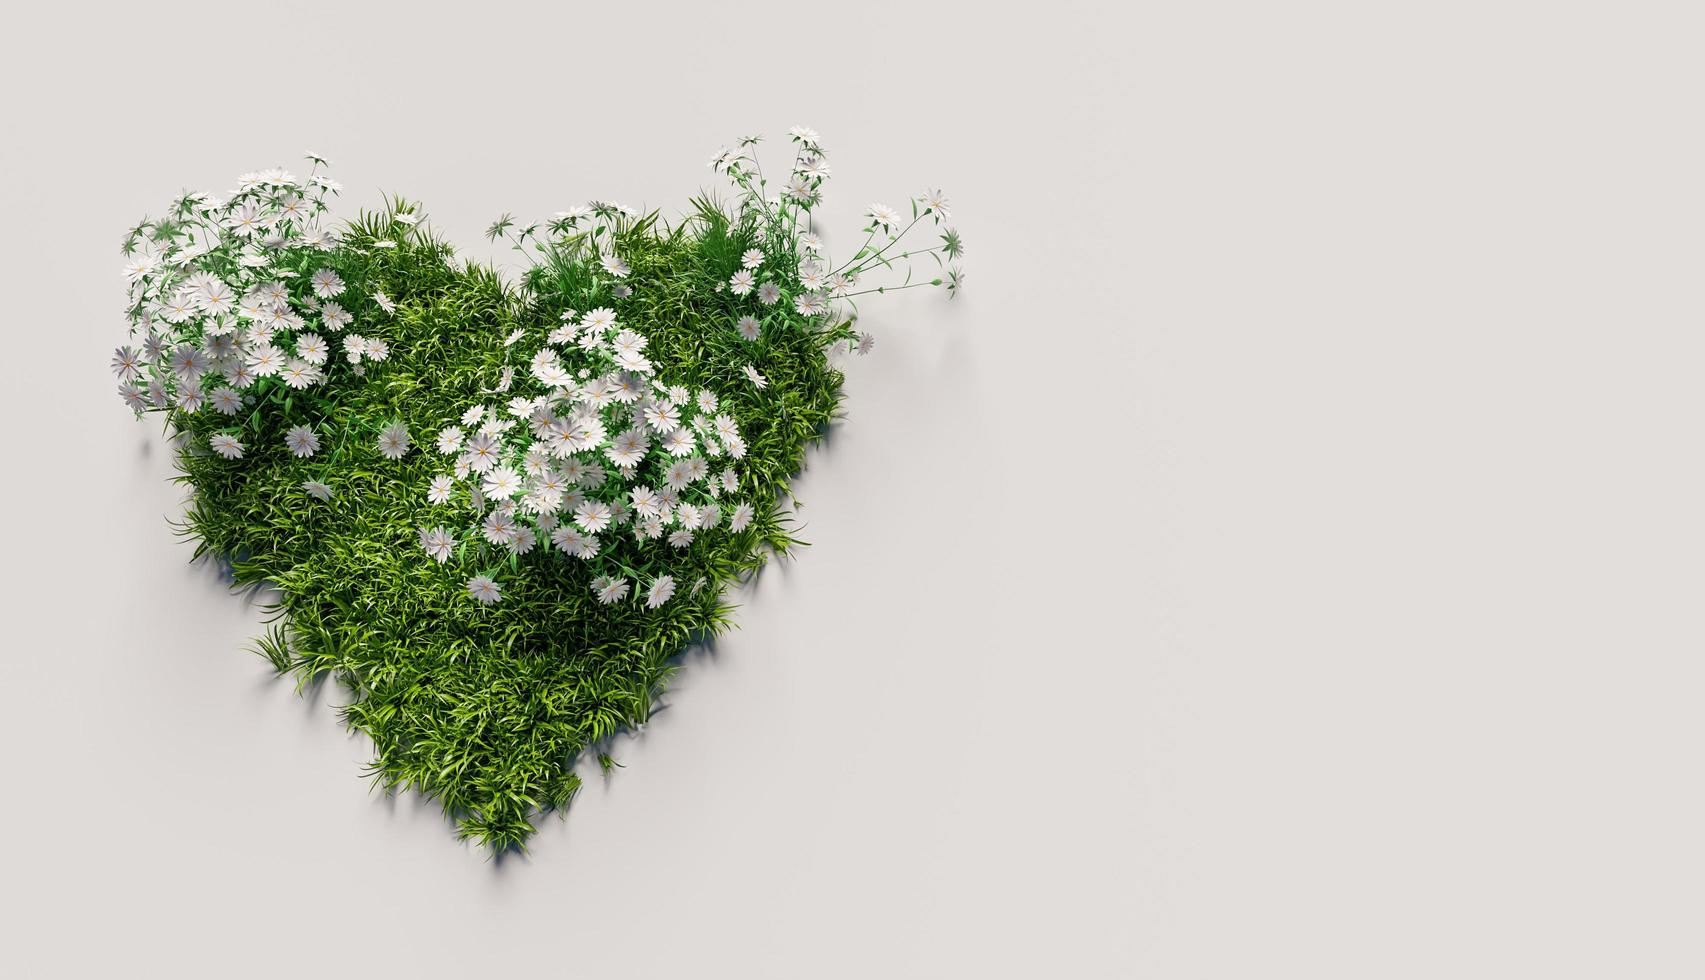 hart van gras met witte bloemen op witte achtergrond met copyspace, 3d render foto